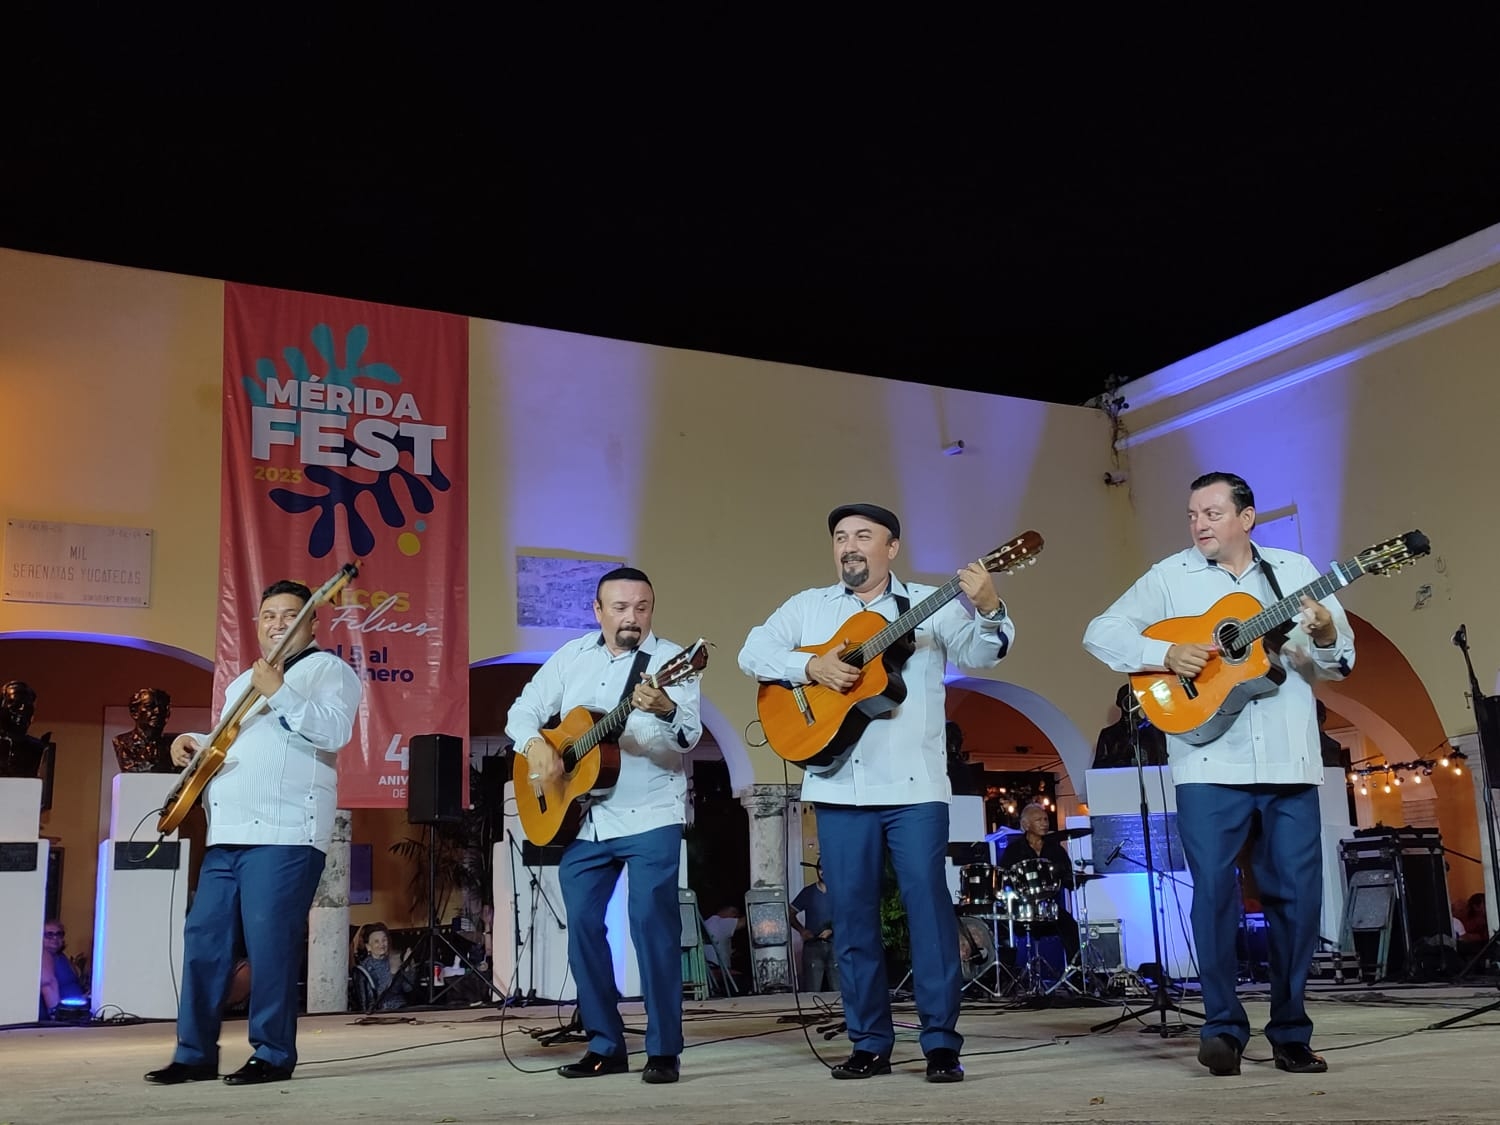 Eventos en Mérida: Conoce la cartelera de eventos gratis para este fin de semana